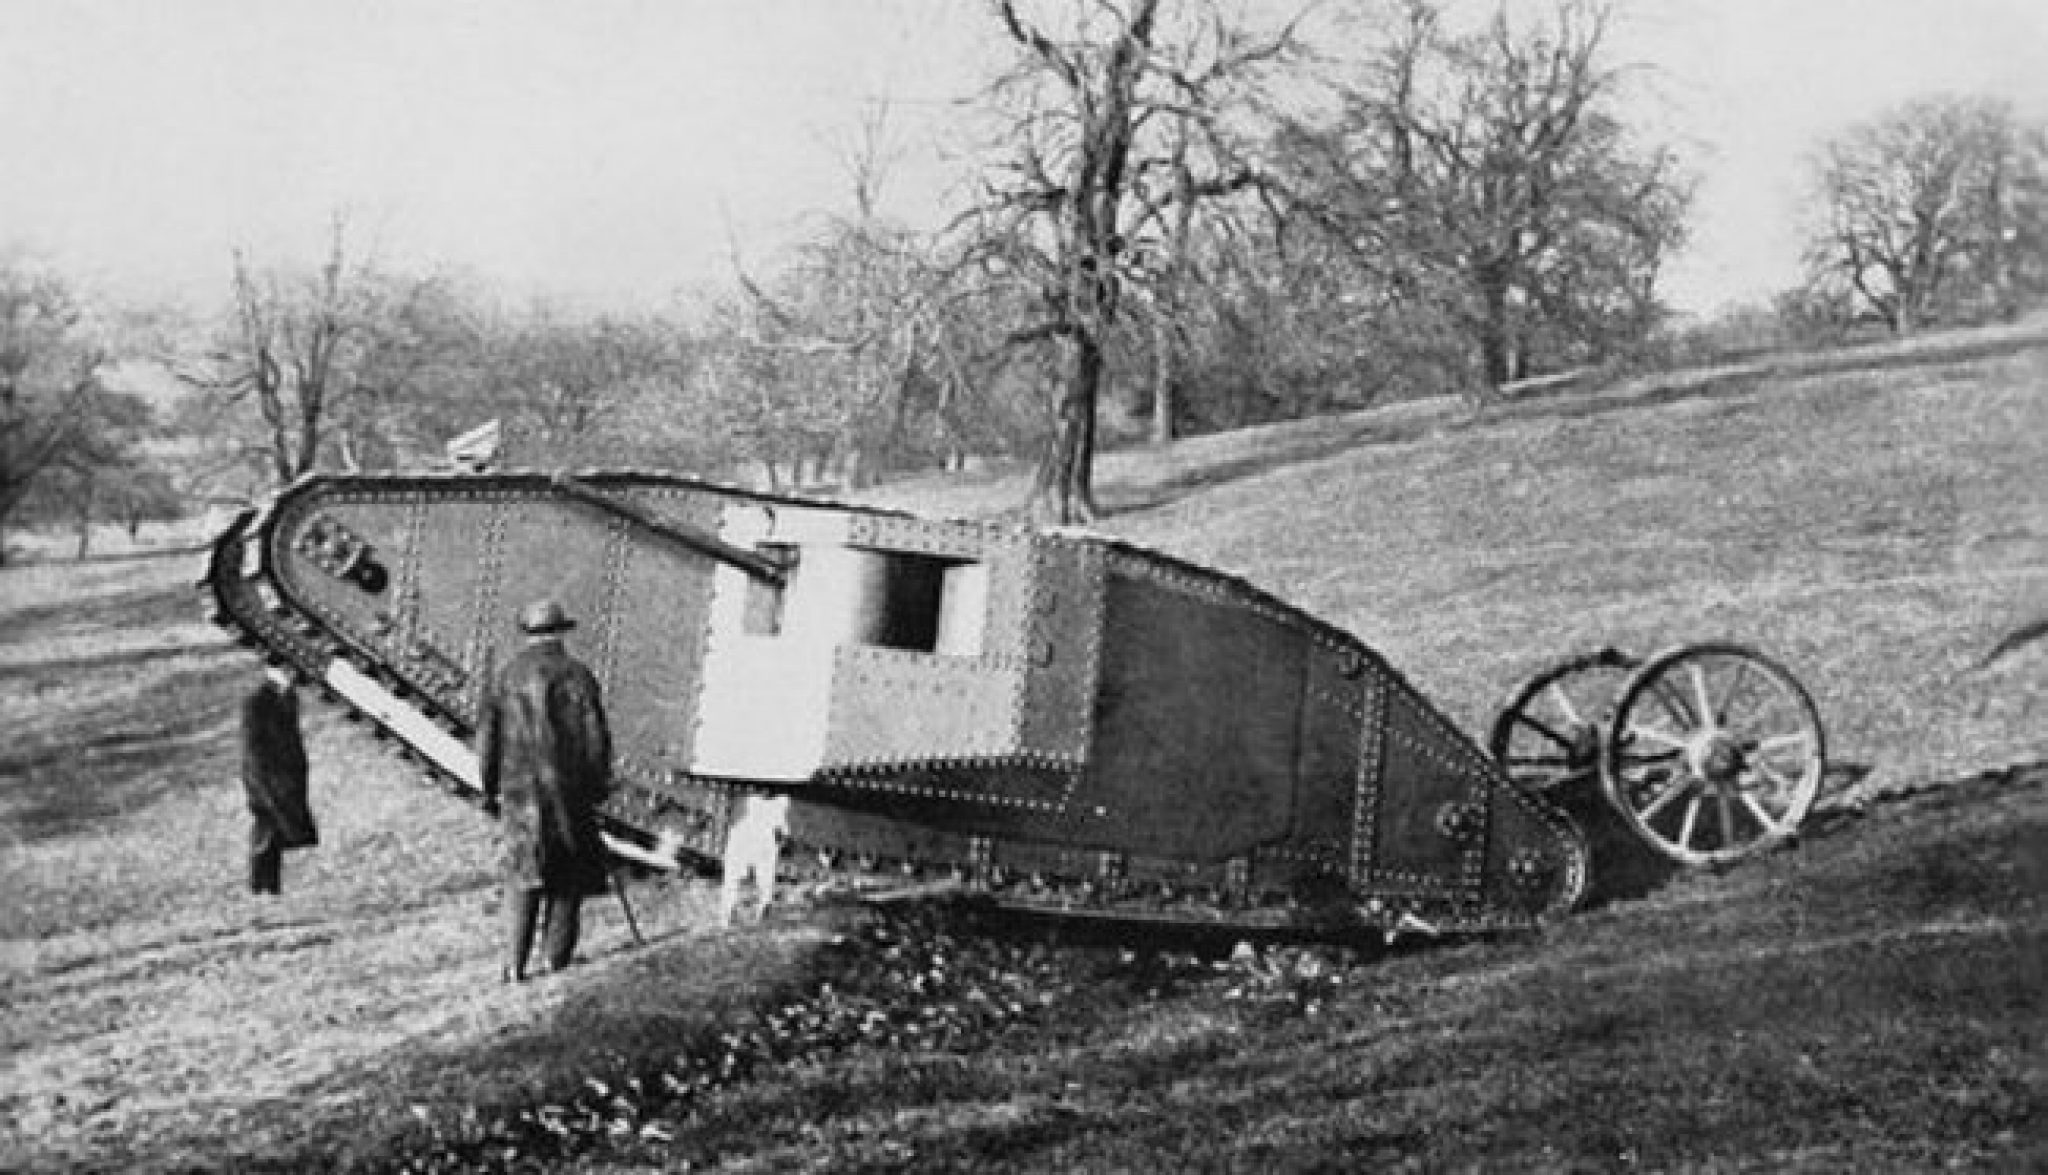 Hetherington Armored tractor 1914 танк. Британский танк первой мировой войны.